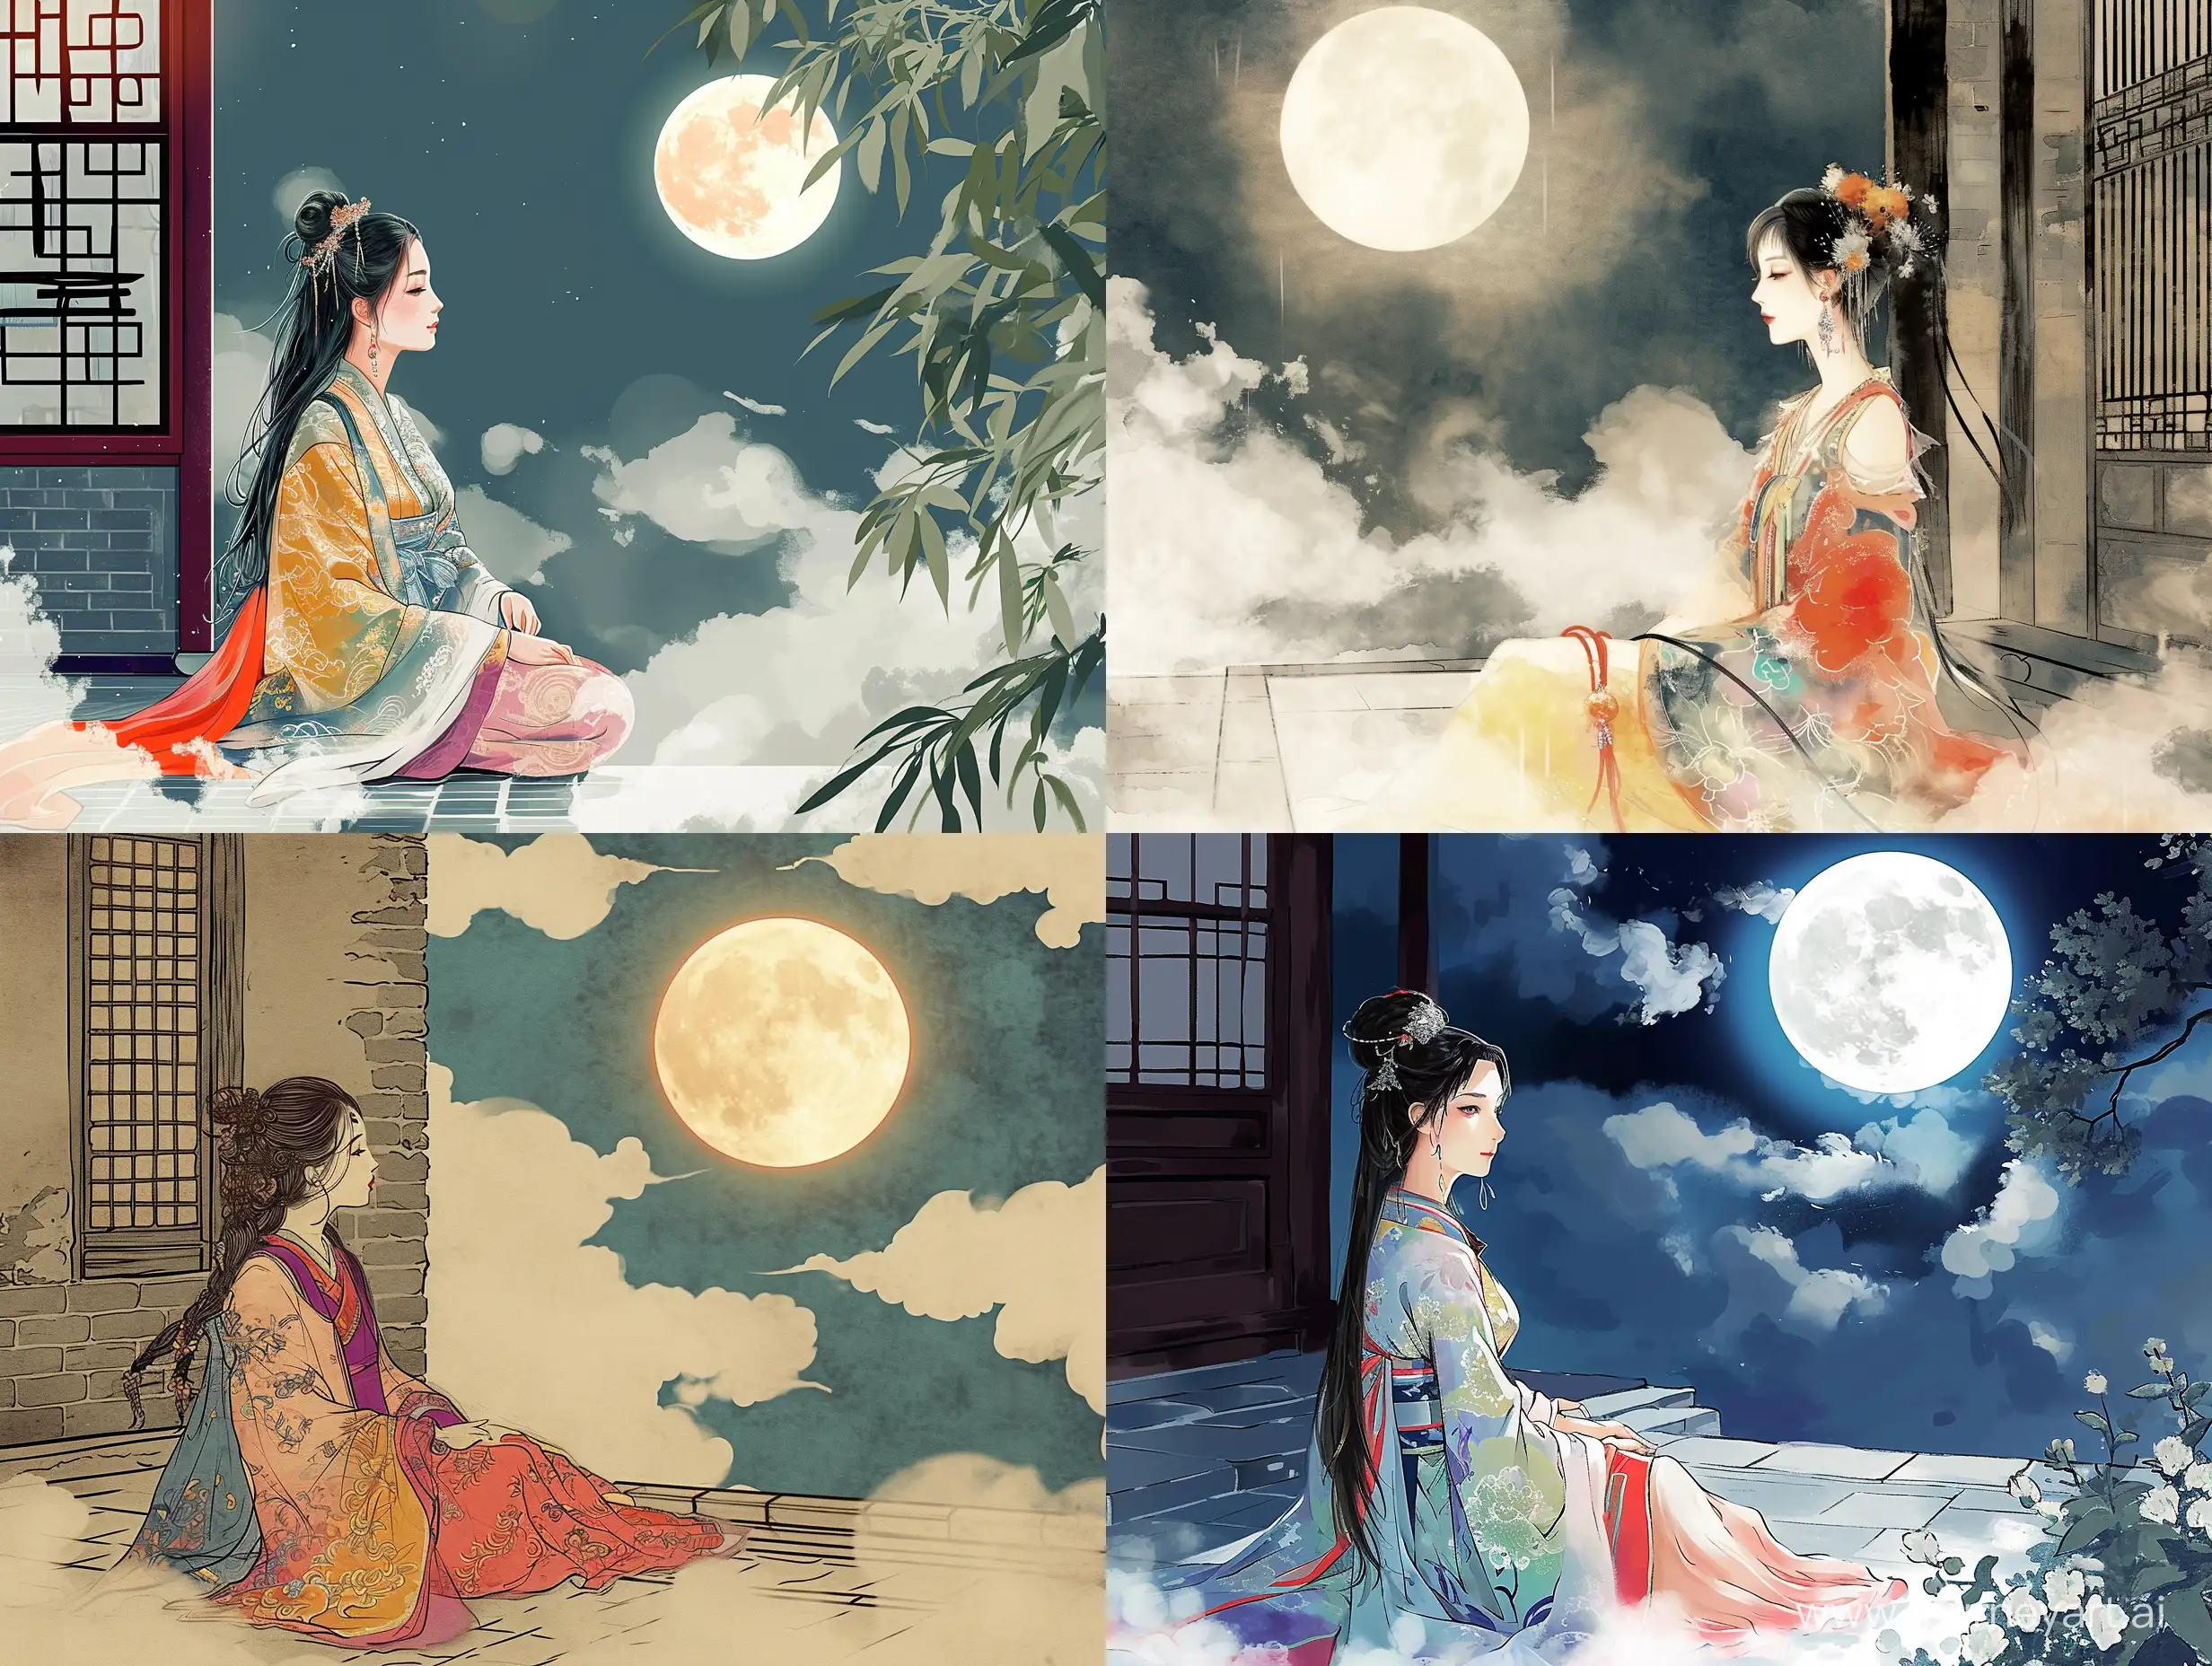 一个美女坐在庭院中赏月，浮云将月光遮蔽，衣着华丽，彩色中国风，水墨画风格，二次元漫画，高清，高级感，大师之作，古代，东方美学。